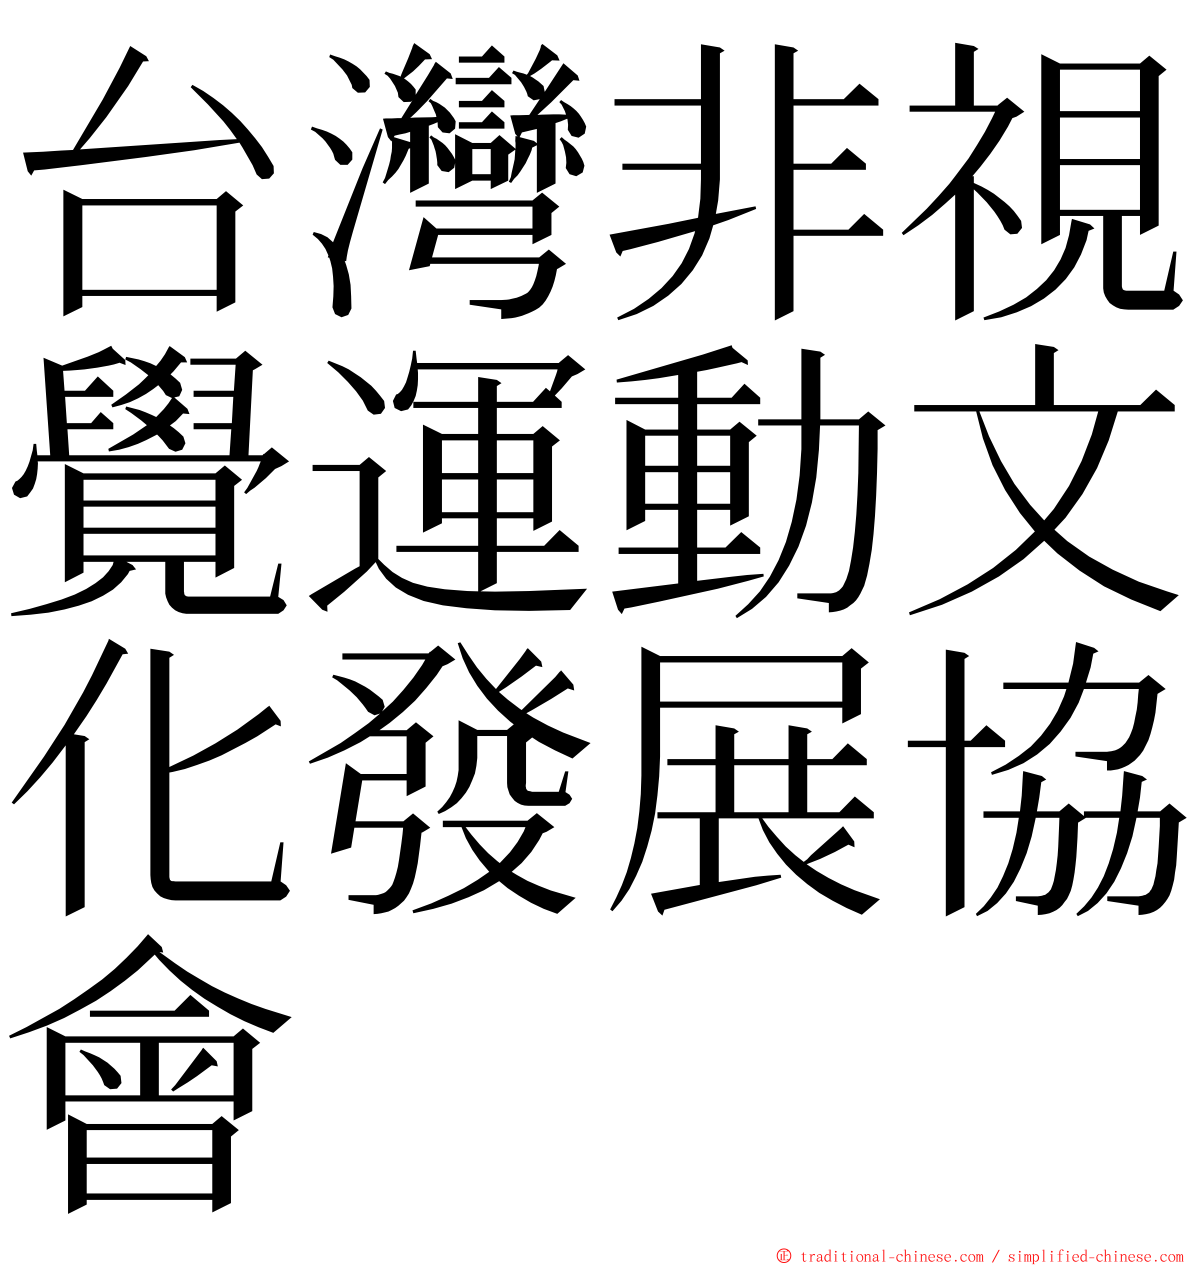 台灣非視覺運動文化發展協會 ming font